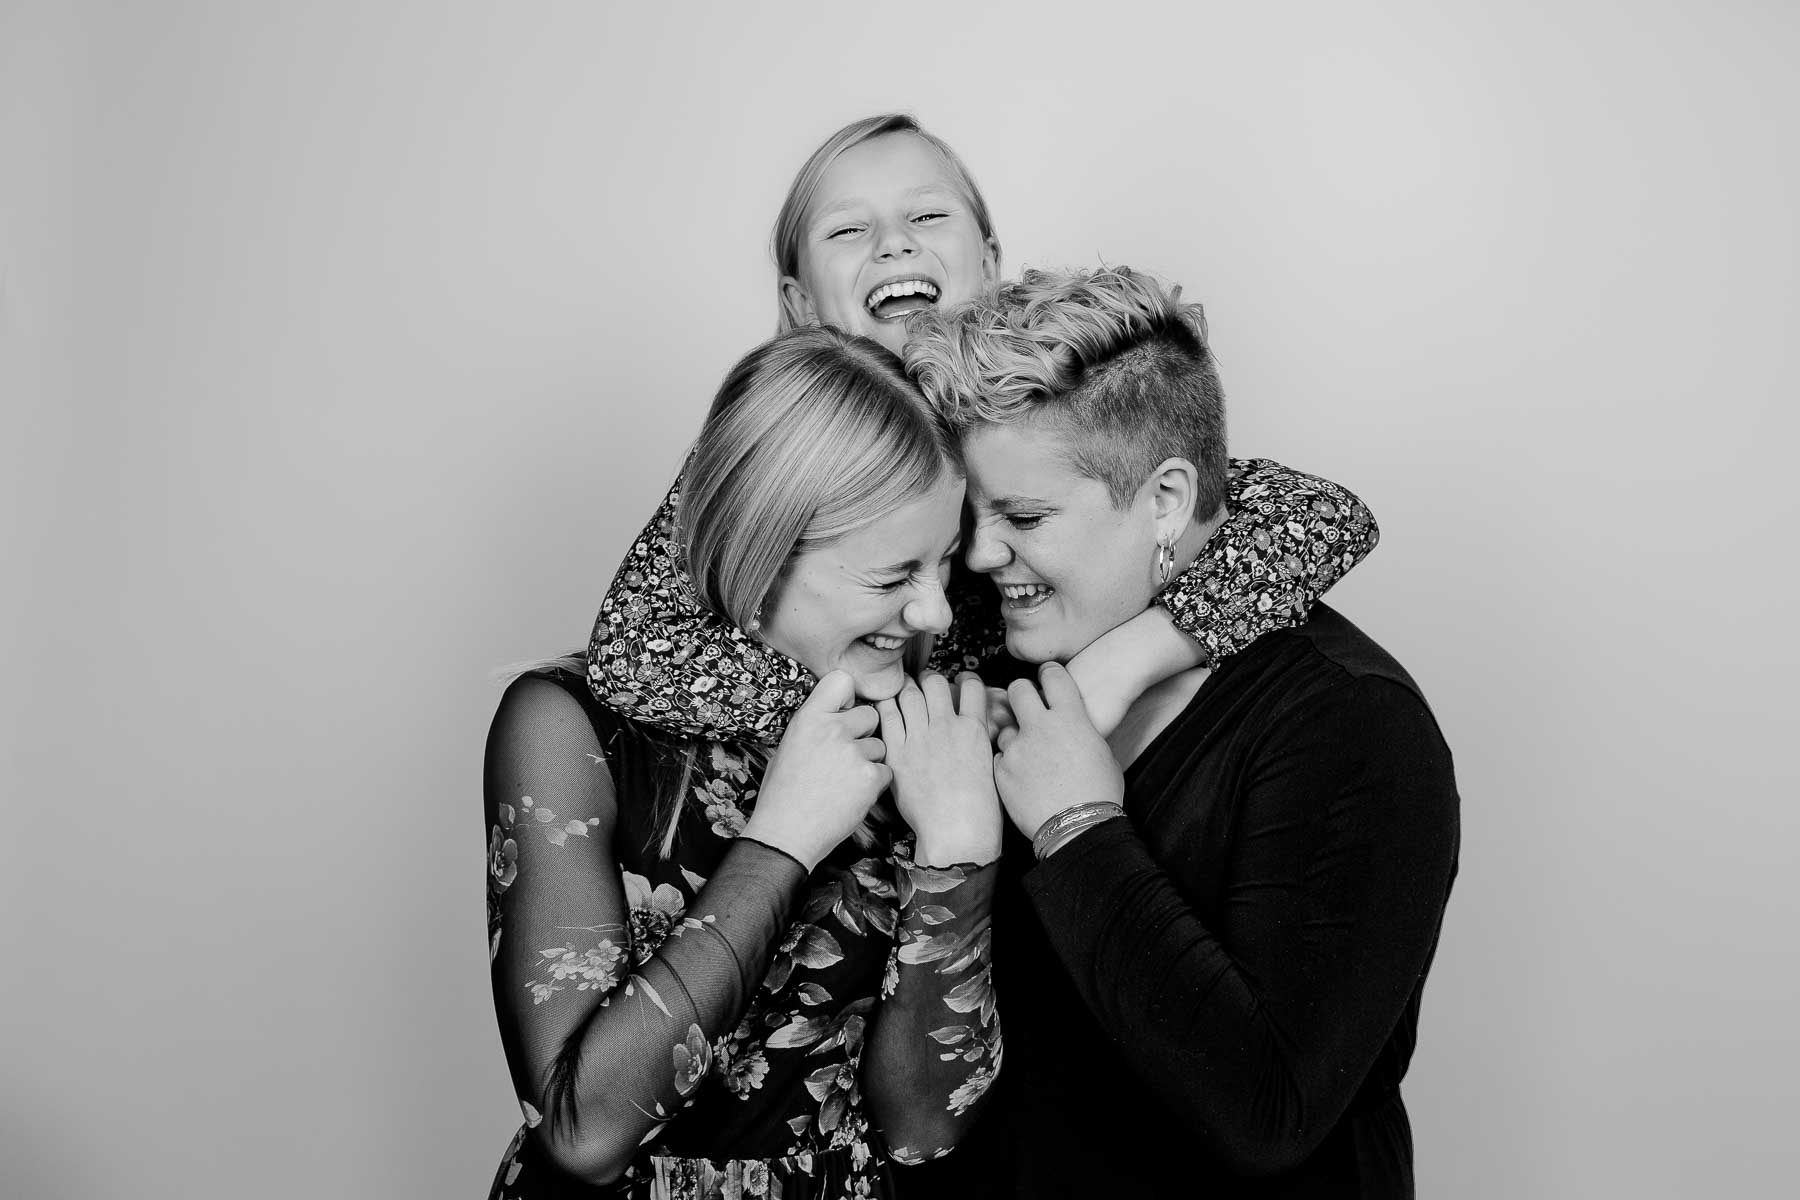 Familiefotografering i Danmark: Få en uforglemmelig oplevelse sammen med jeres kære